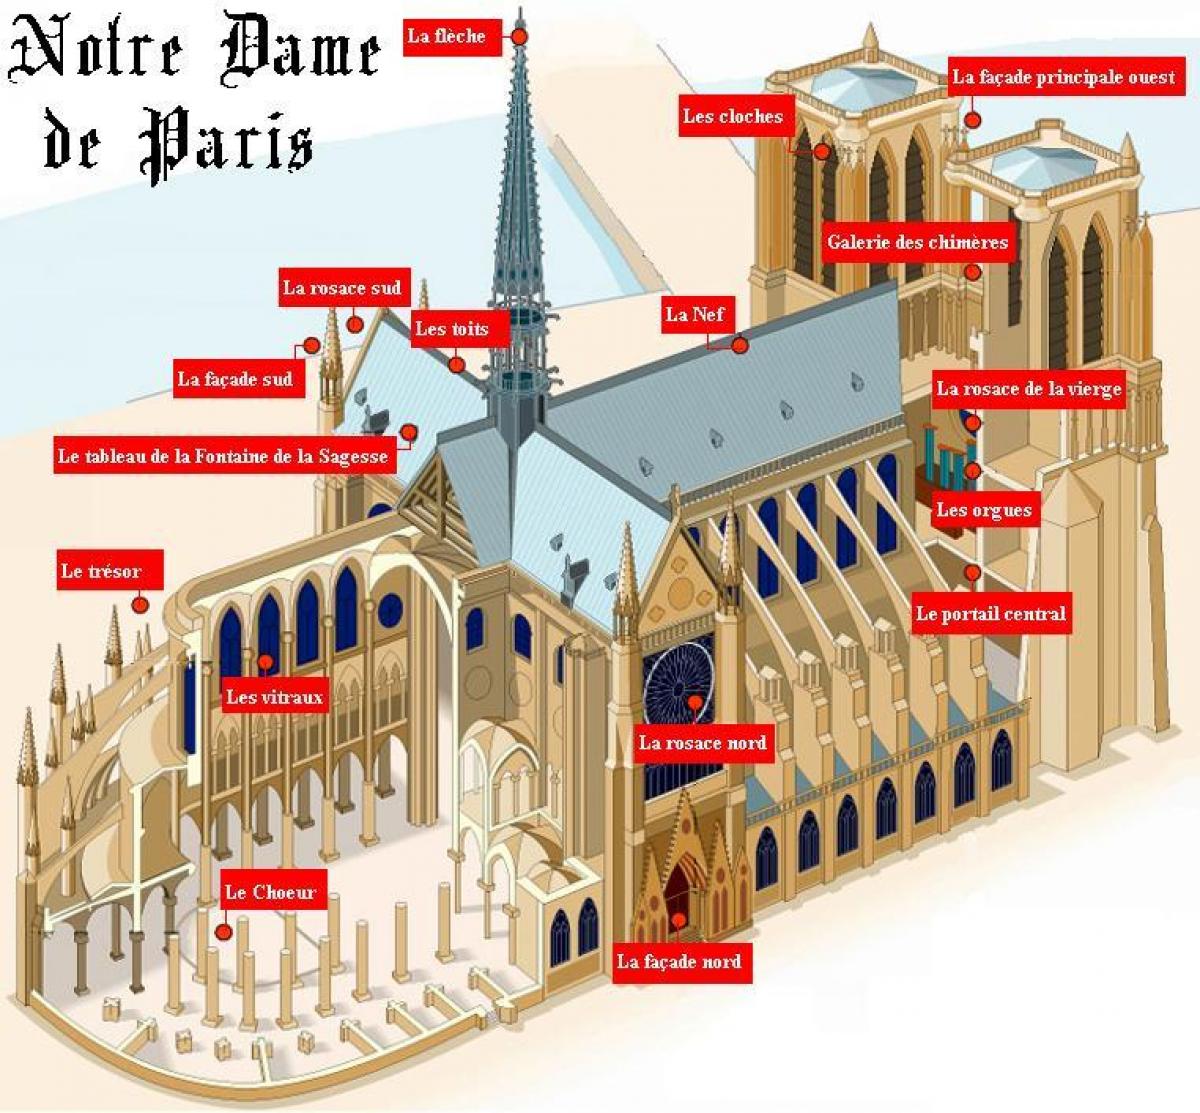 Map of Notre Dame de Paris